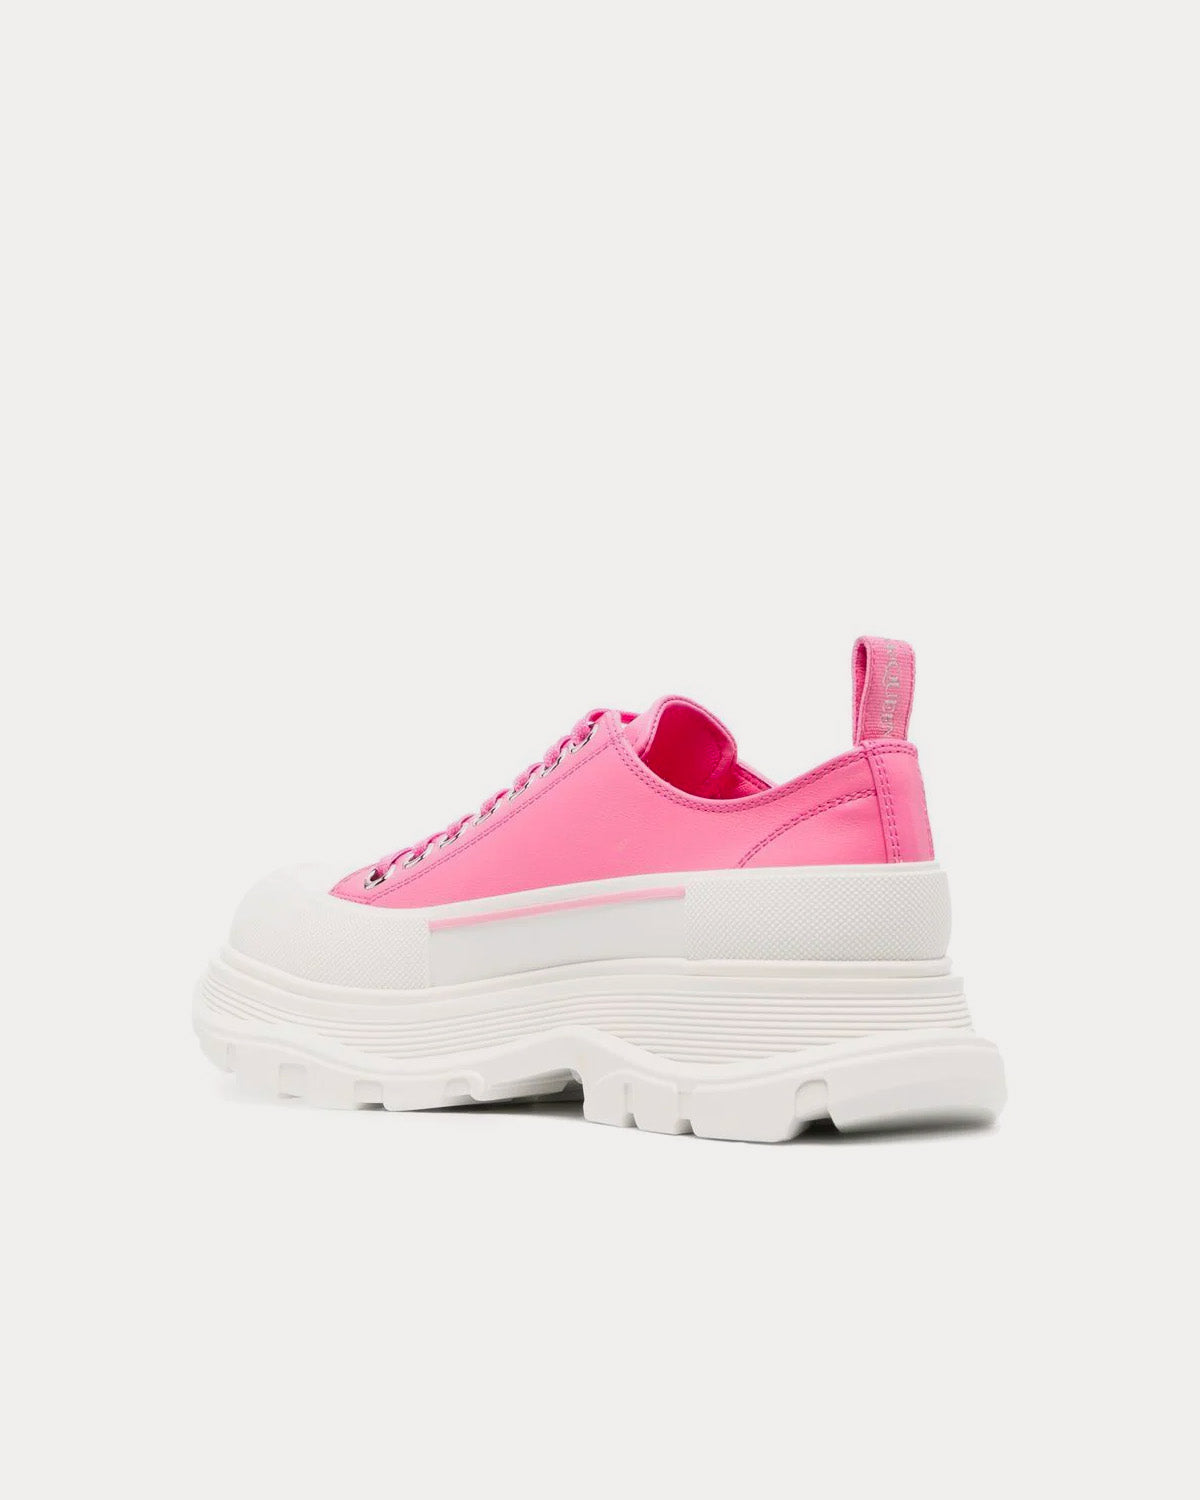 Alexander McQueen - Tread Slick Pink / White Low Top Sneakers